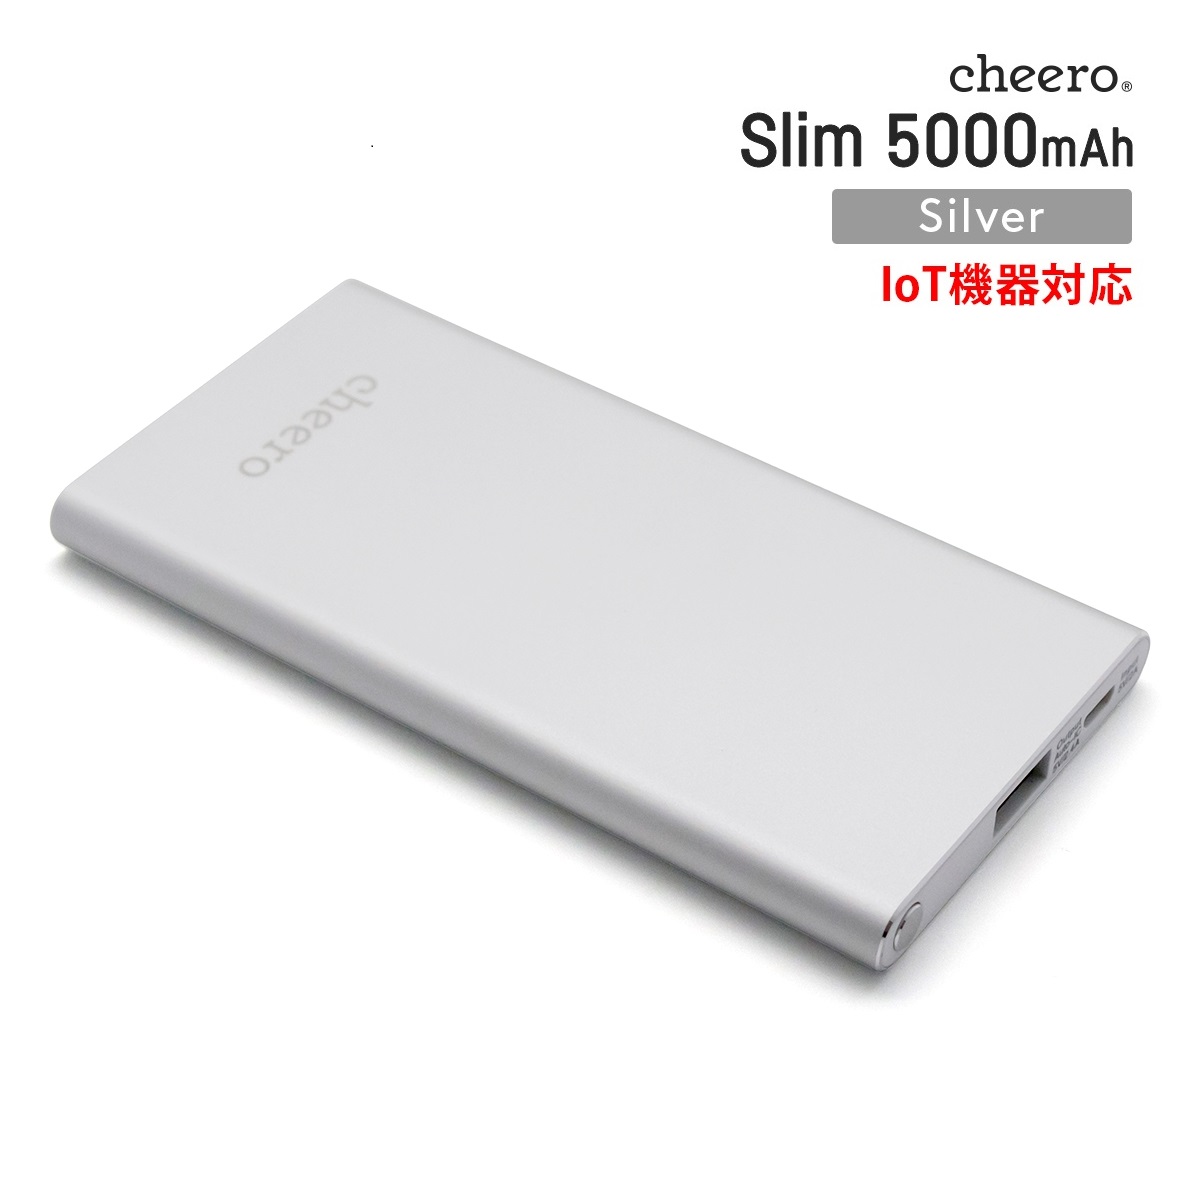 モバイルバッテリー IoT機器対応 微弱電流 薄型 充電器 チーロ cheero Slim 5000mAh